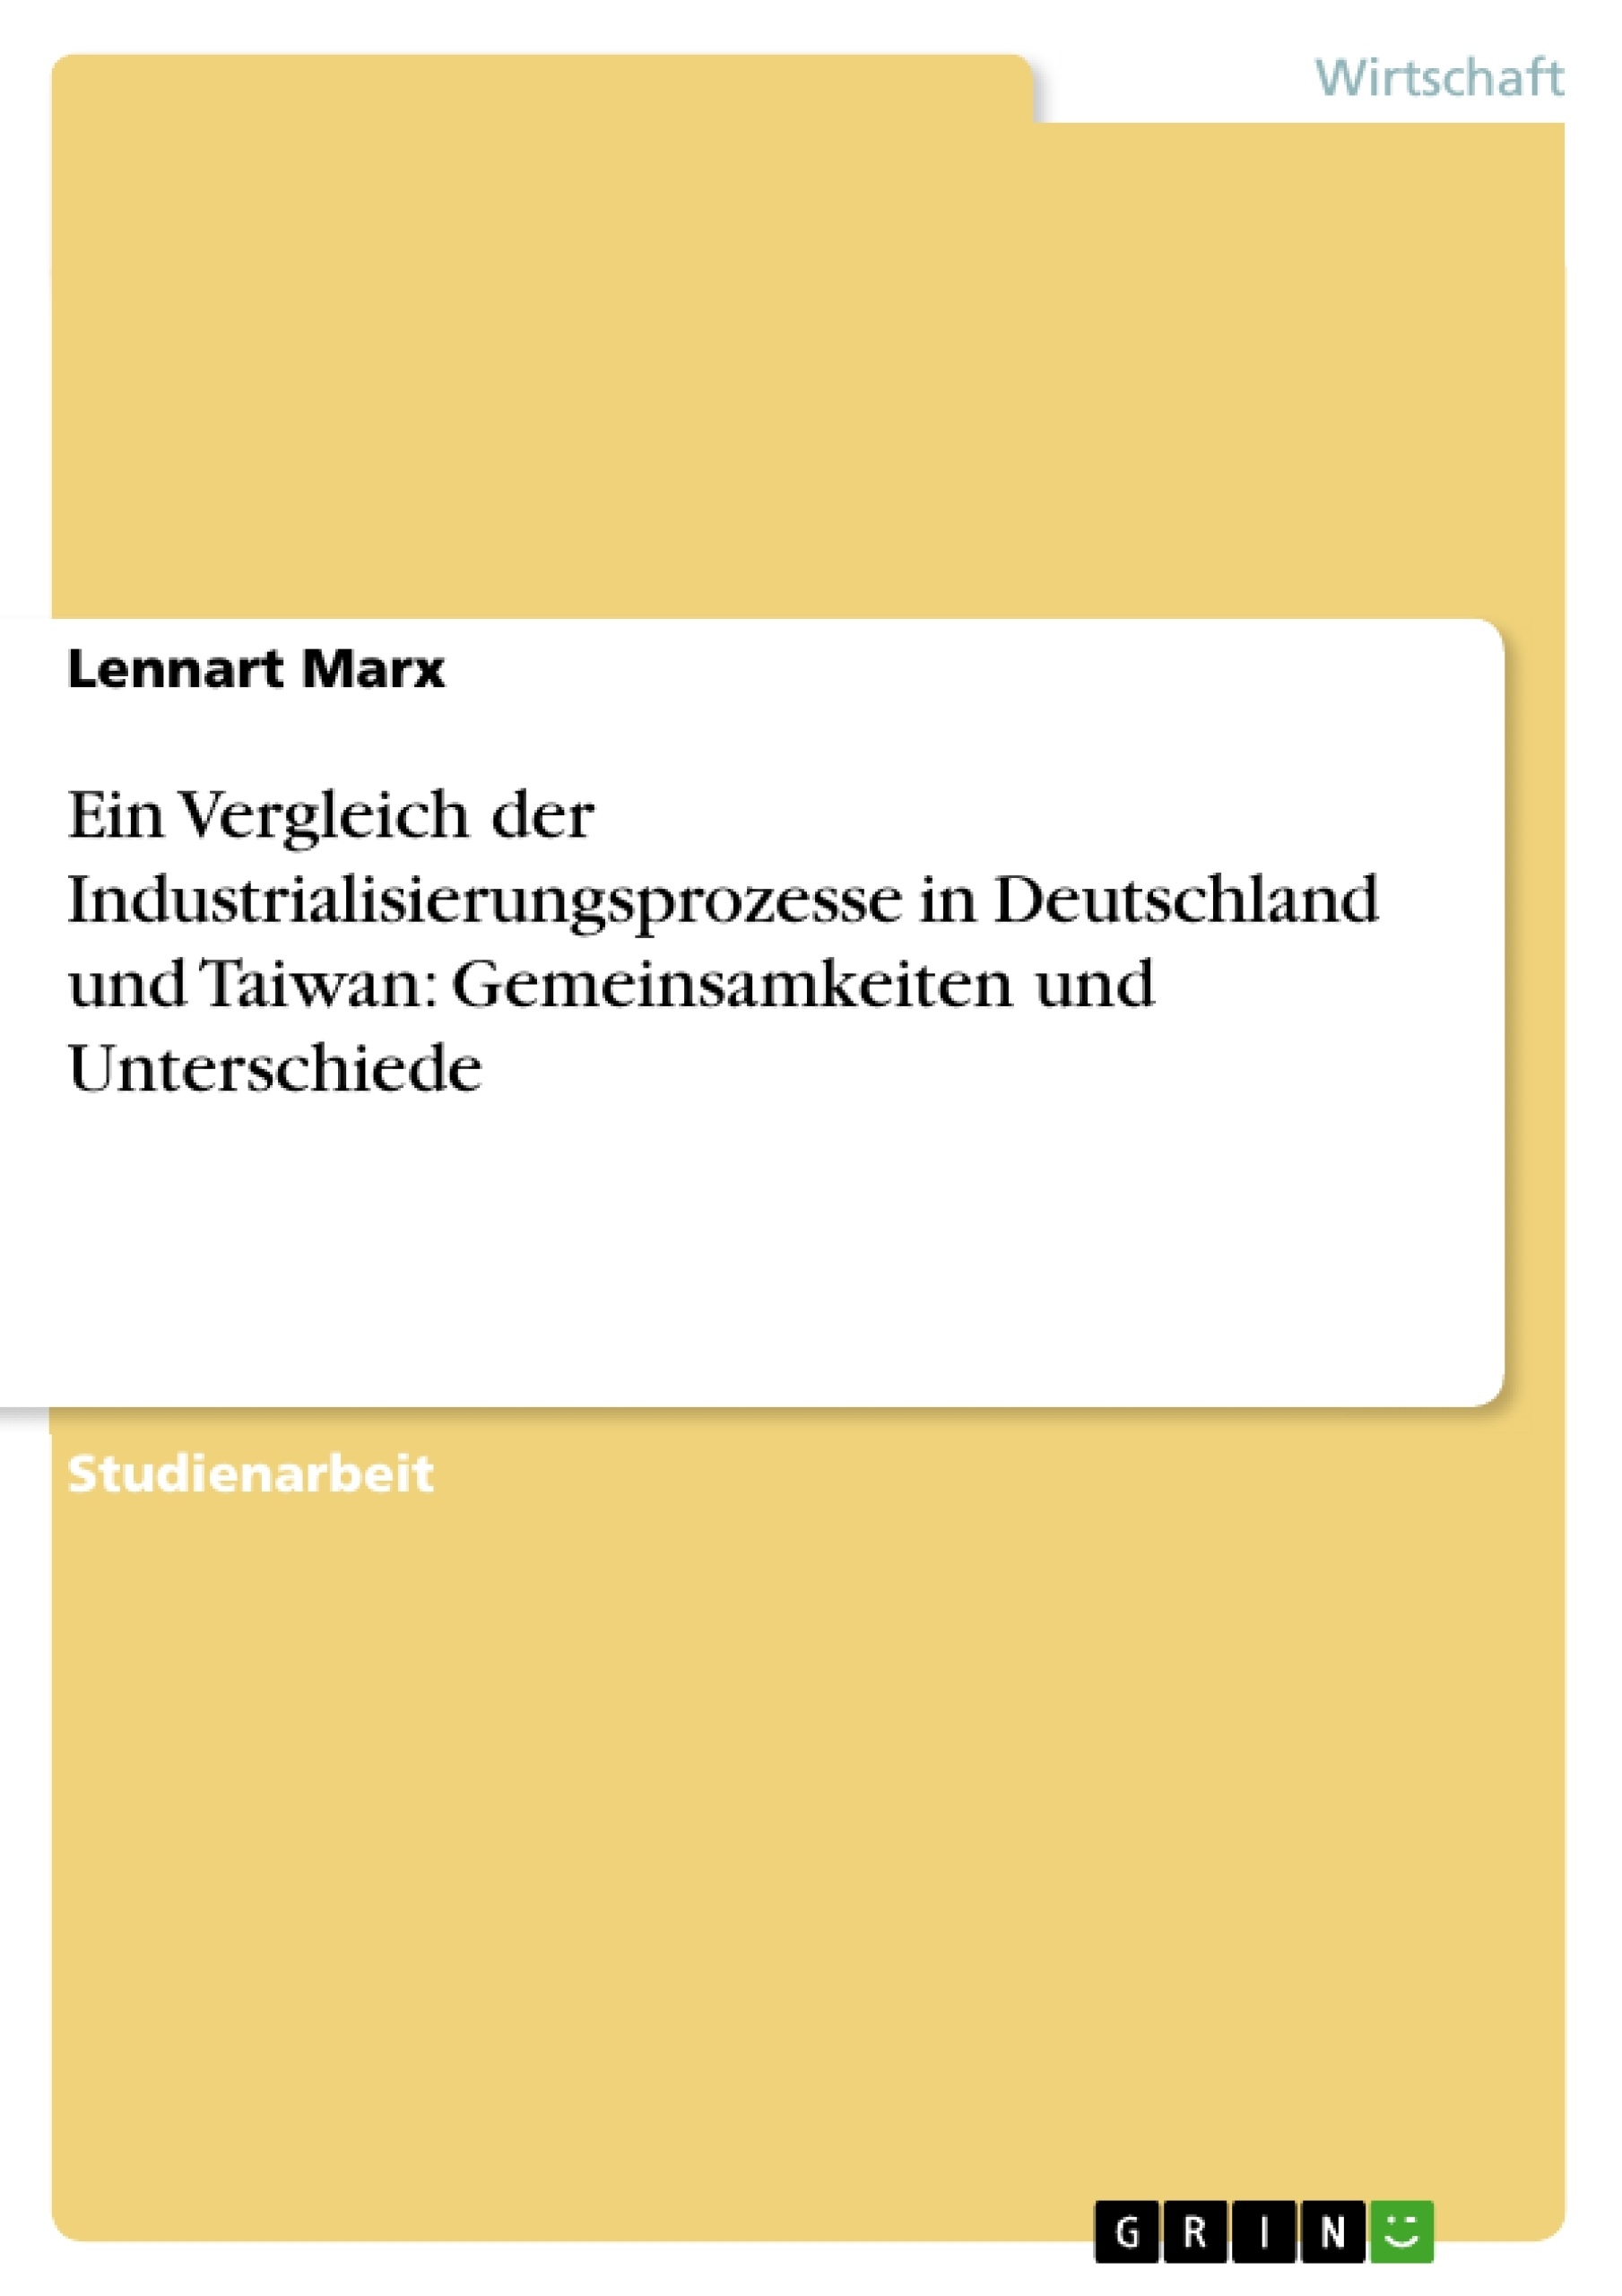 Title: Ein Vergleich der Industrialisierungsprozesse in Deutschland und Taiwan: Gemeinsamkeiten und Unterschiede